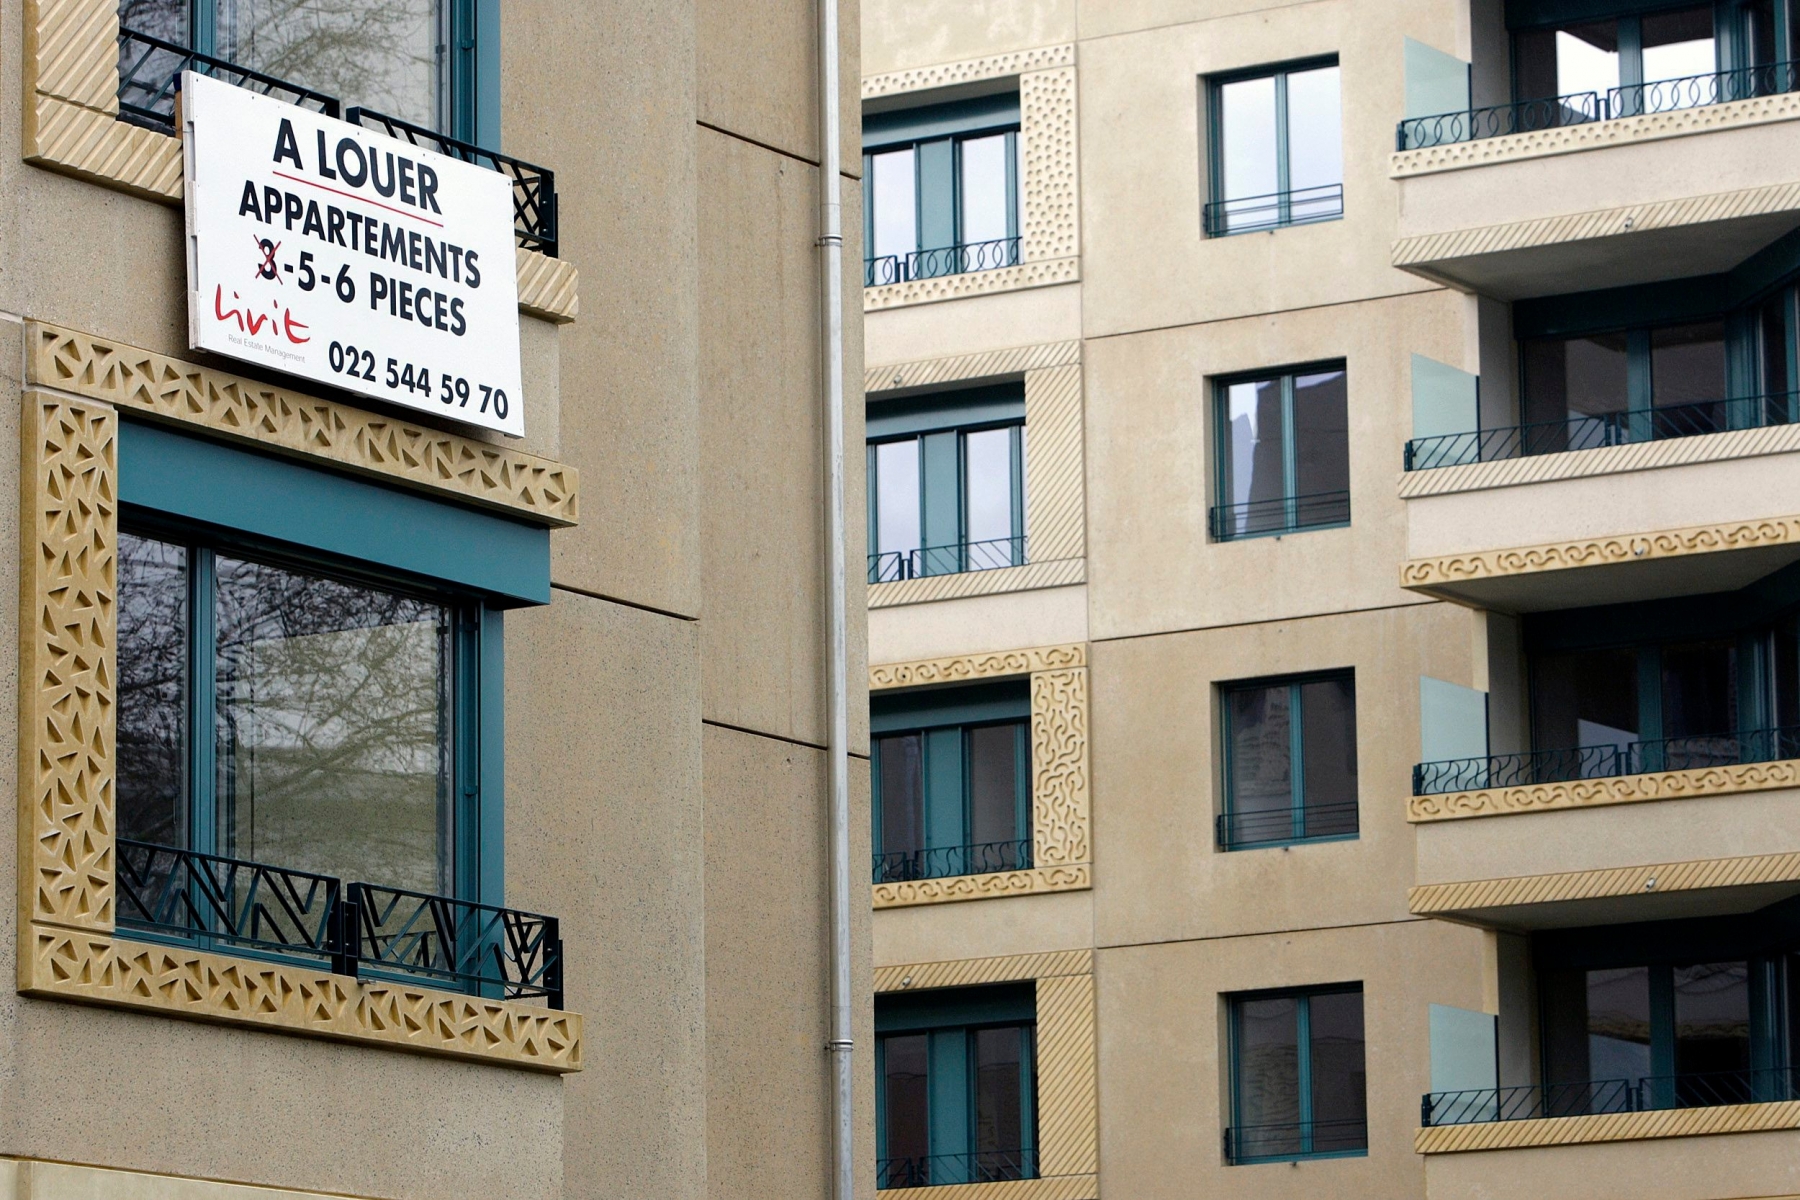 ARCHIV --- ZUM ENTSCHEID DES NATIONALRATES VOM MONTAG, 25. MAI 2009, AUF DAS NEUE MIETRECHT NICHT EINZUTRETEN, STELLEN WIR IHNEN FOLGENDES BILD ZUR VERFUEGUNG. - Un panneau "A Louer Appartement" est pose sur la facade d'un immeuble situe a l'avenue d'Aire, ce vendredi 11 avril 2008 a Geneve. (KEYSTONE/Salvatore Di Nolfi) SCHWEIZ NATIONALRAT MIETRECHT